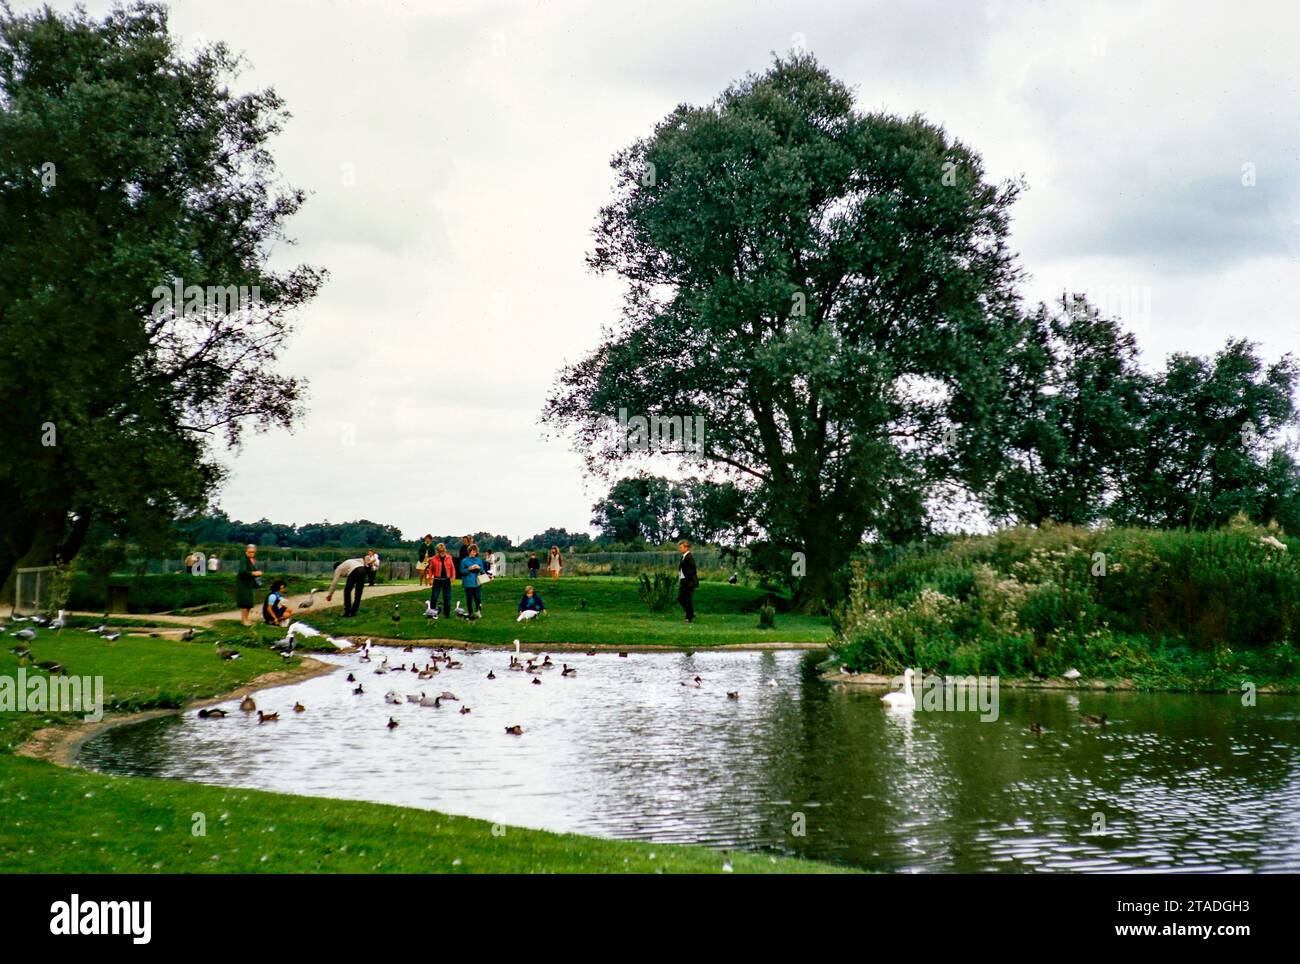 Jardines de aves acuáticas de Peakirk, Wildfowl Trust, Peakirk, Peterborough, Northamptonshire, Inglaterra Inglaterra, UK1969 Foto de stock